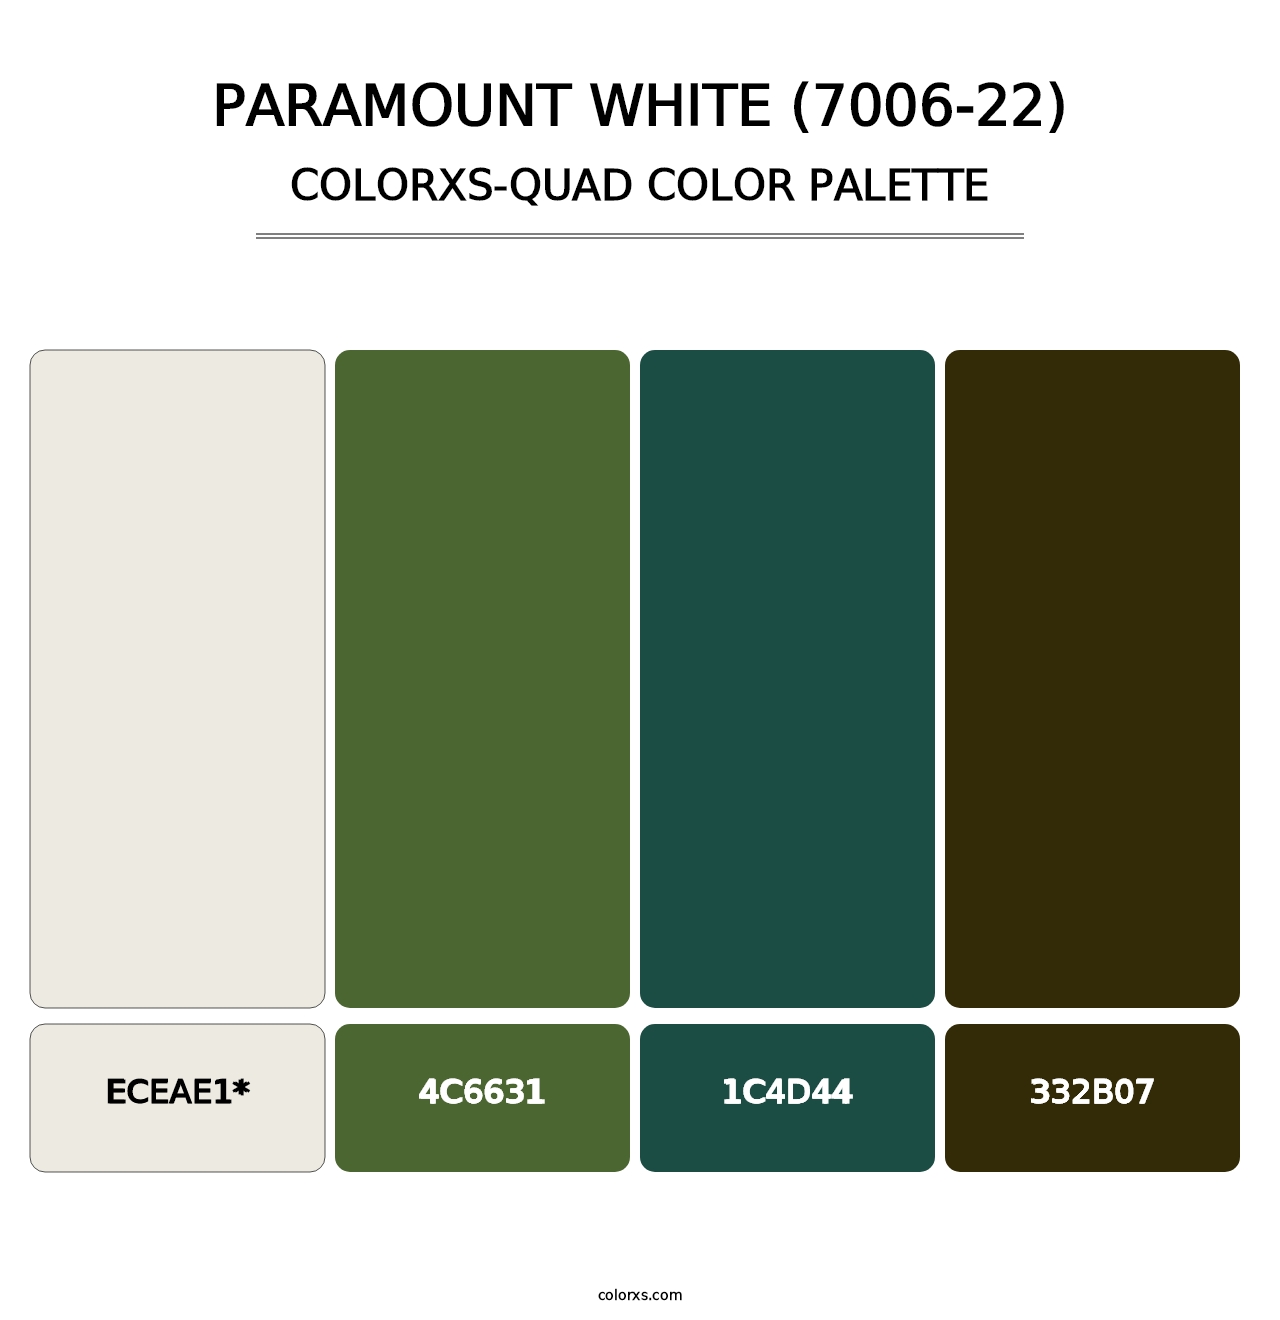 Paramount White (7006-22) - Colorxs Quad Palette